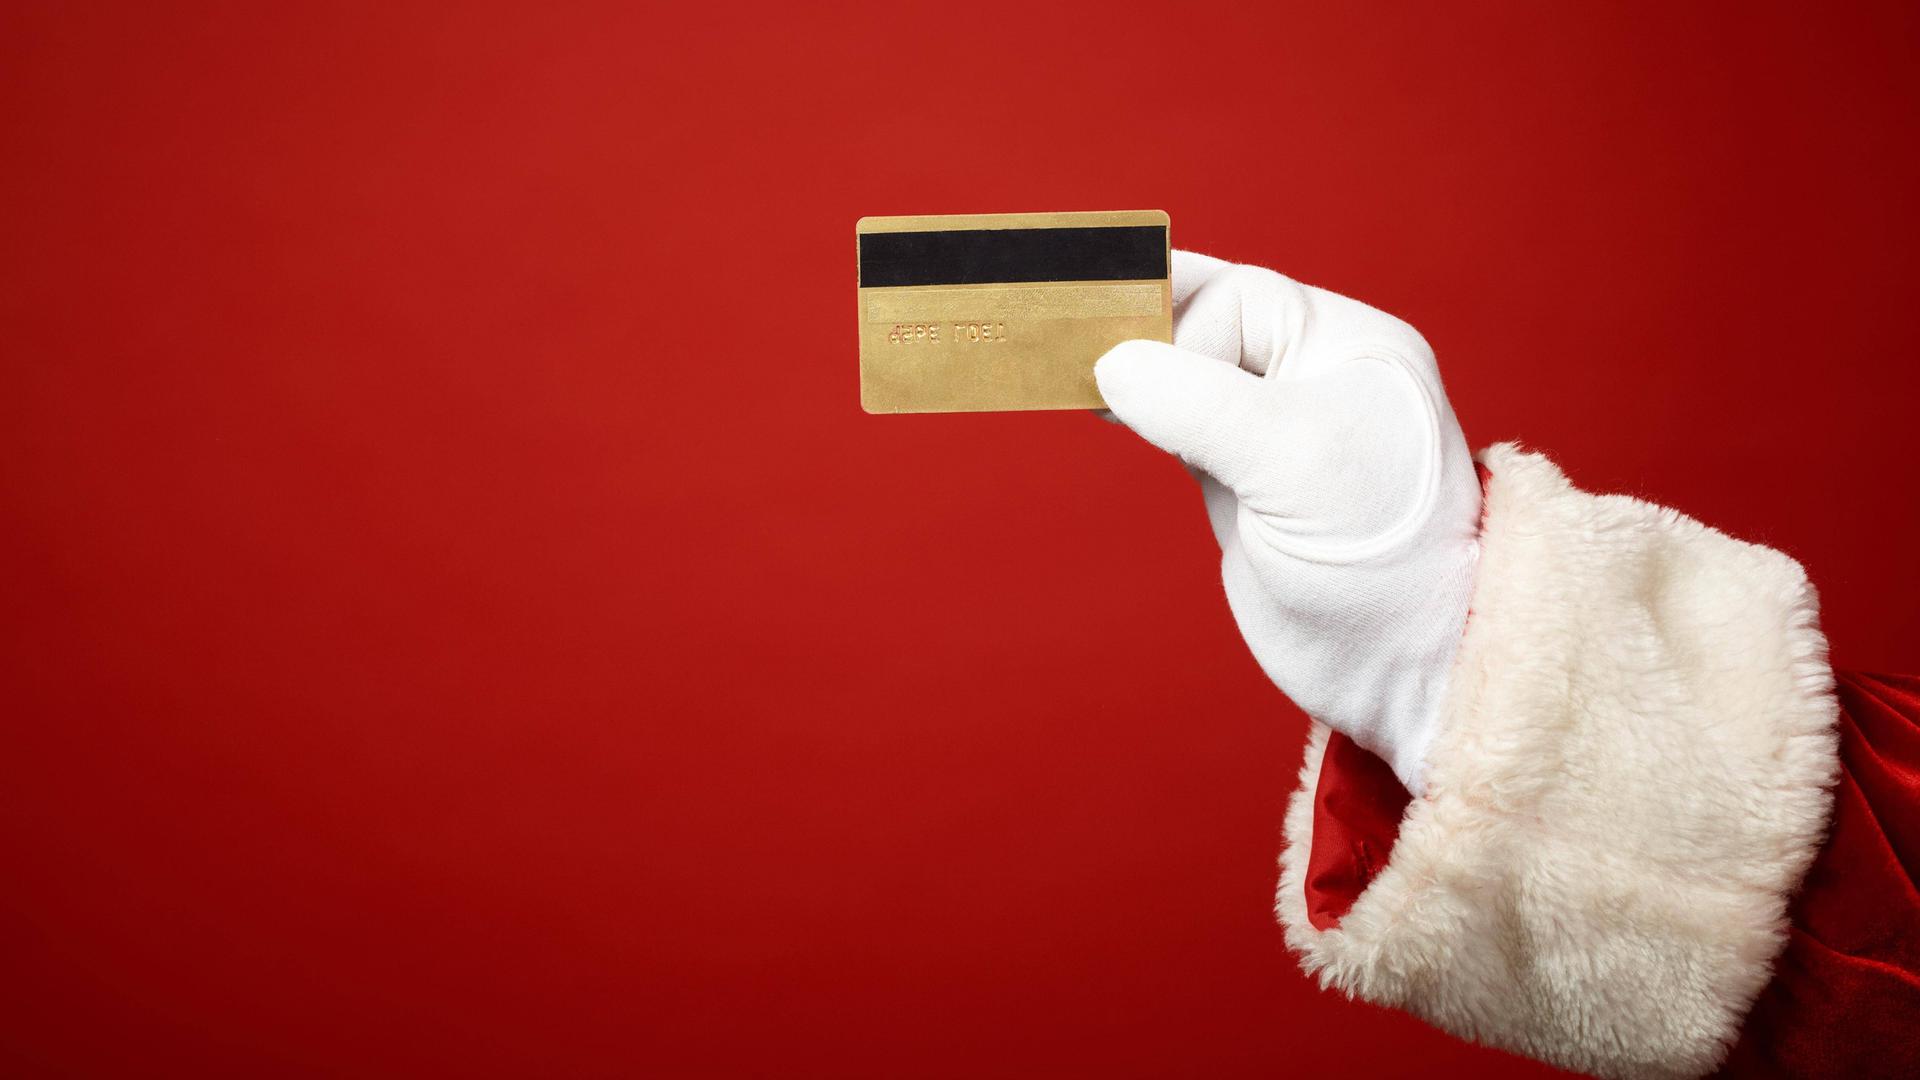 Illustration: Die Hand des Weihnachtsmanns hält eine goldene Kreditkarte.